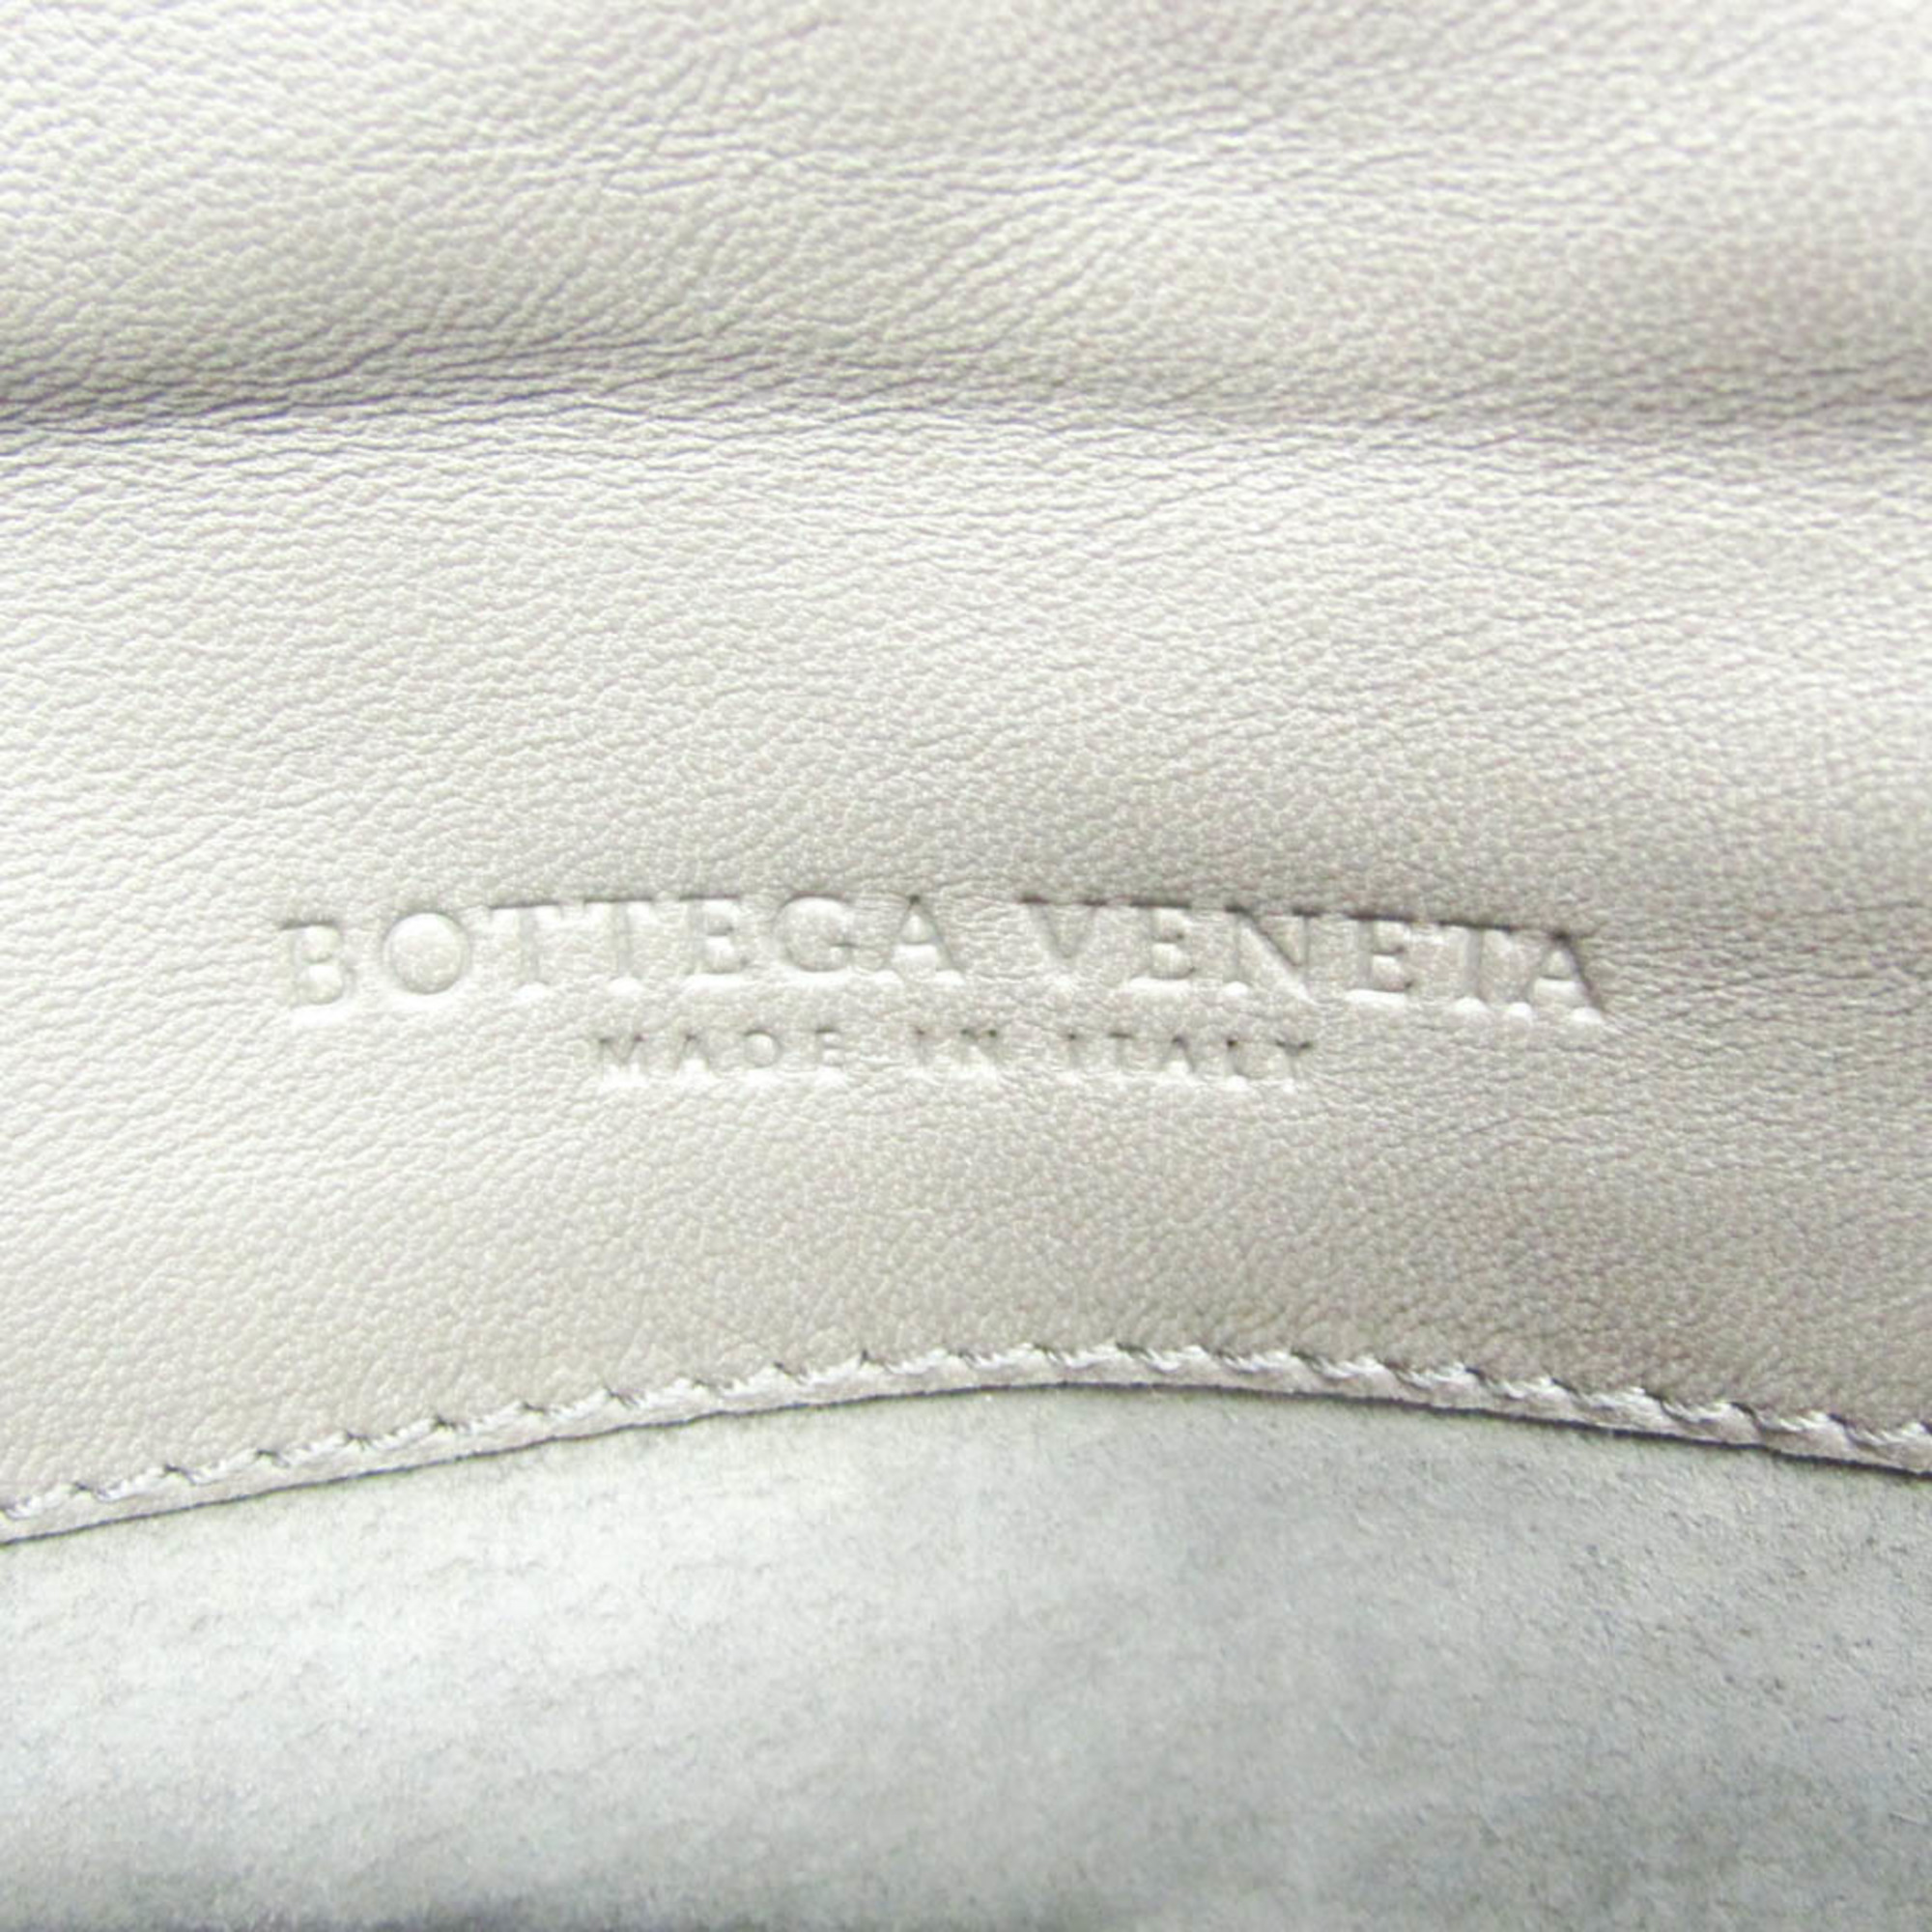 ボッテガ・ヴェネタ(Bottega Veneta) イントレチャート メンズ,レディース レザー クラッチバッグ グレーブラウン